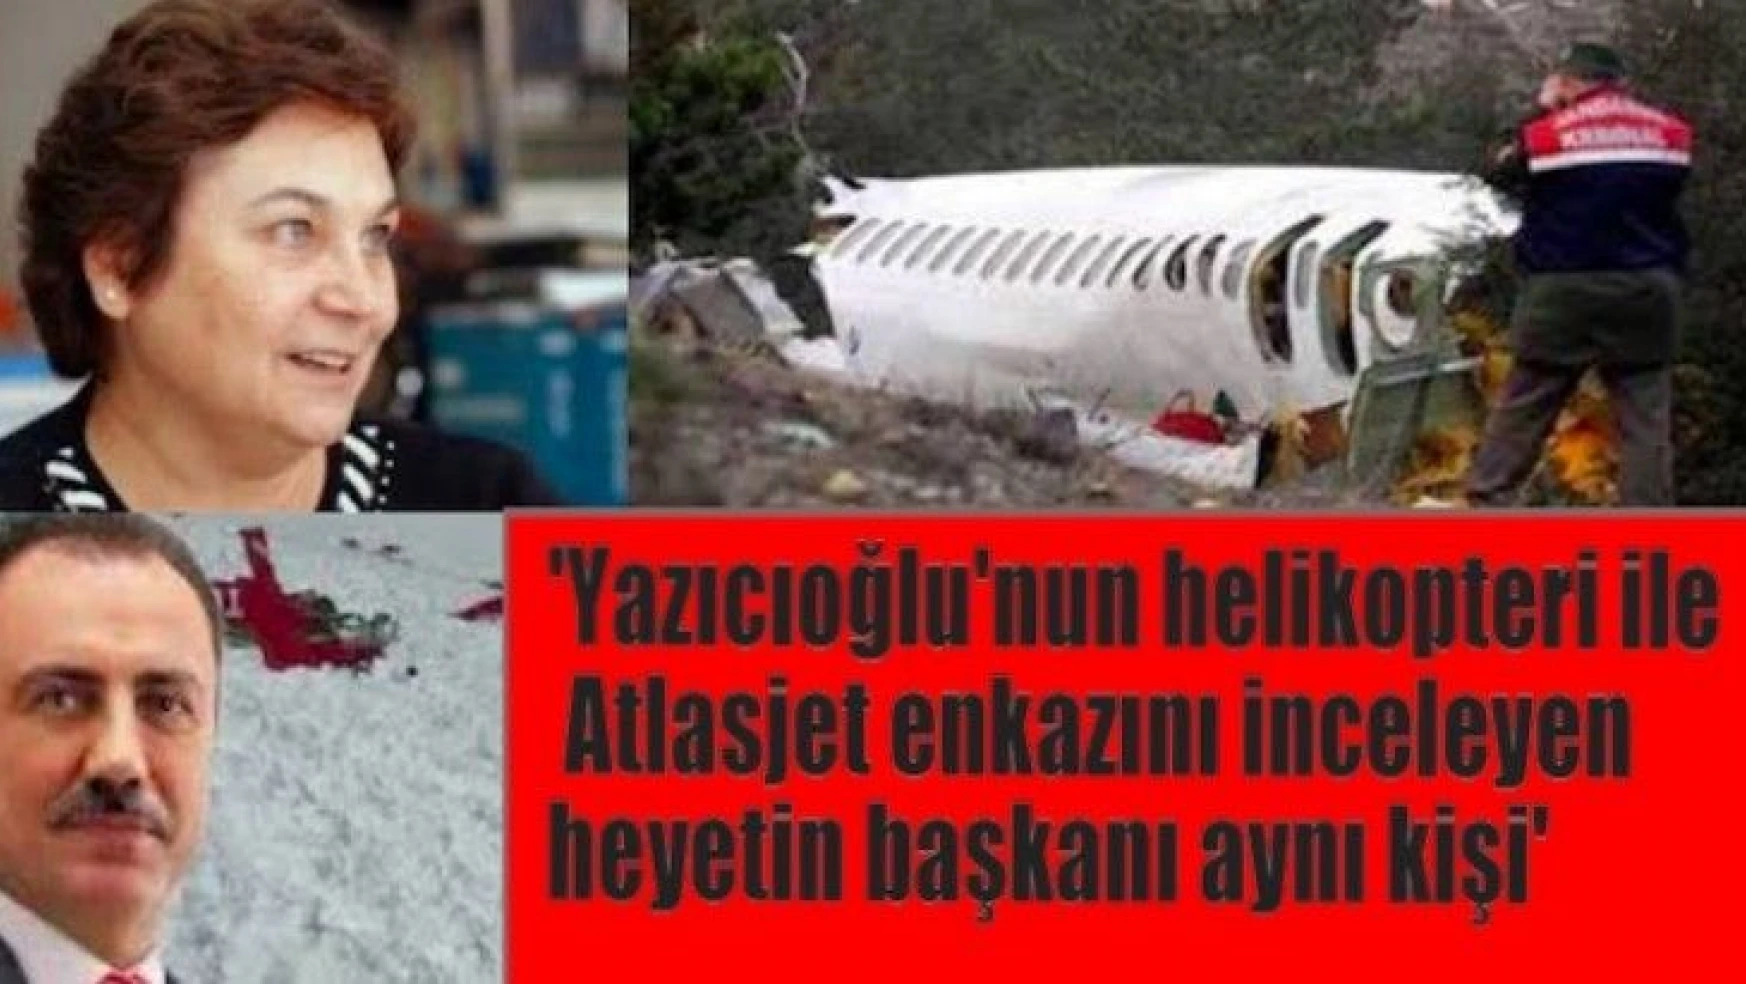 'Yazıcıoğlu'nun helikopteri ve Atlasjet enkazını inceleyen uzman aynı kişi'